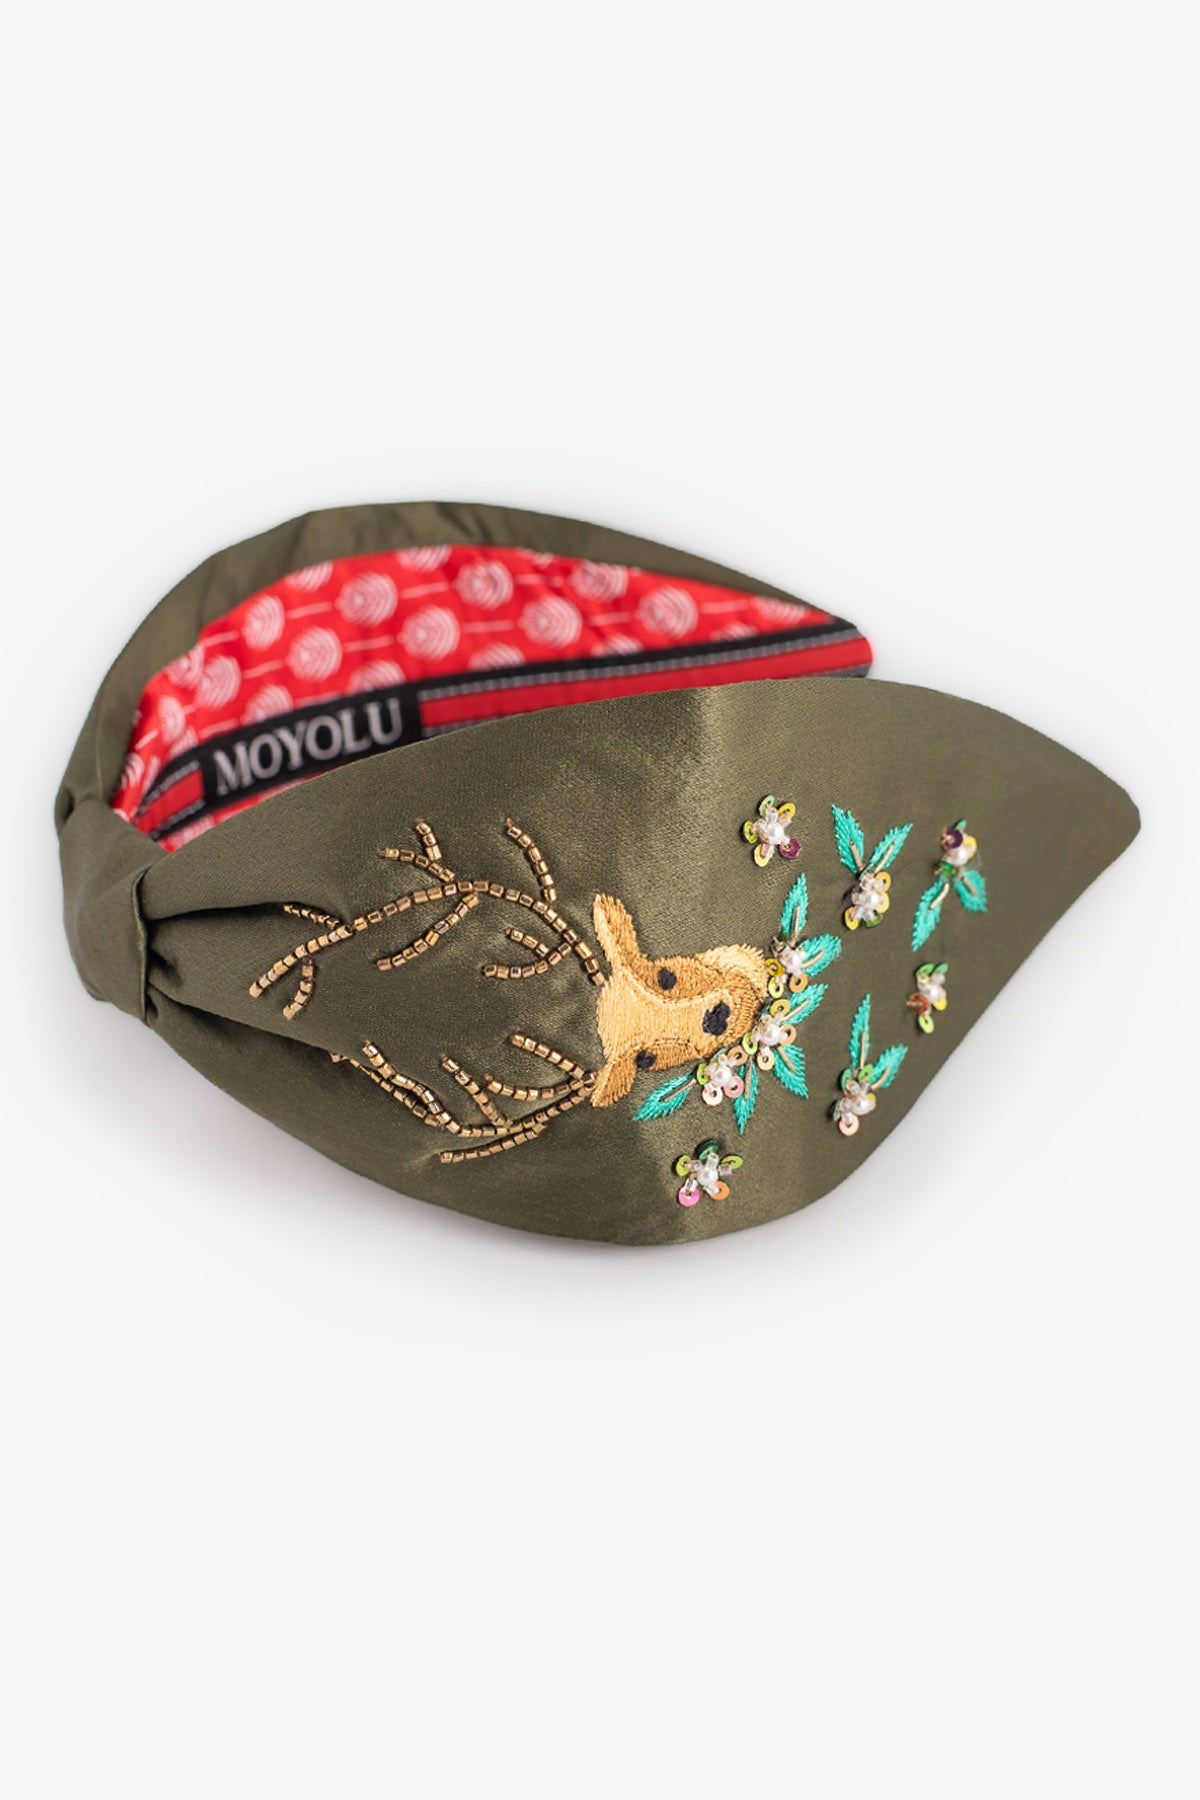 Moyolu Green & Gold Reindeer Headband Accessories online at ScrollnShops